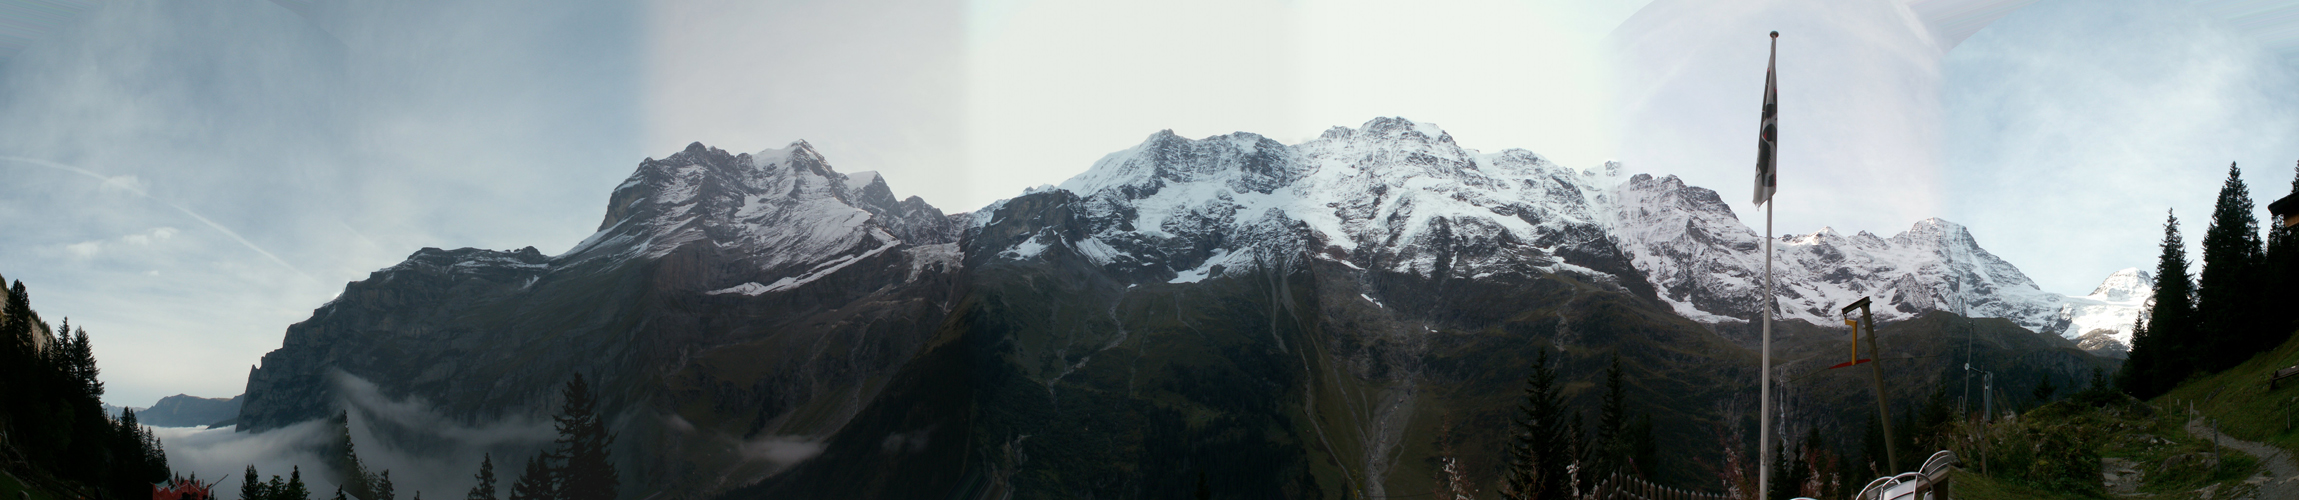 Breitbildfoto vom Berggasthaus Tschingelhorn aus gesehen